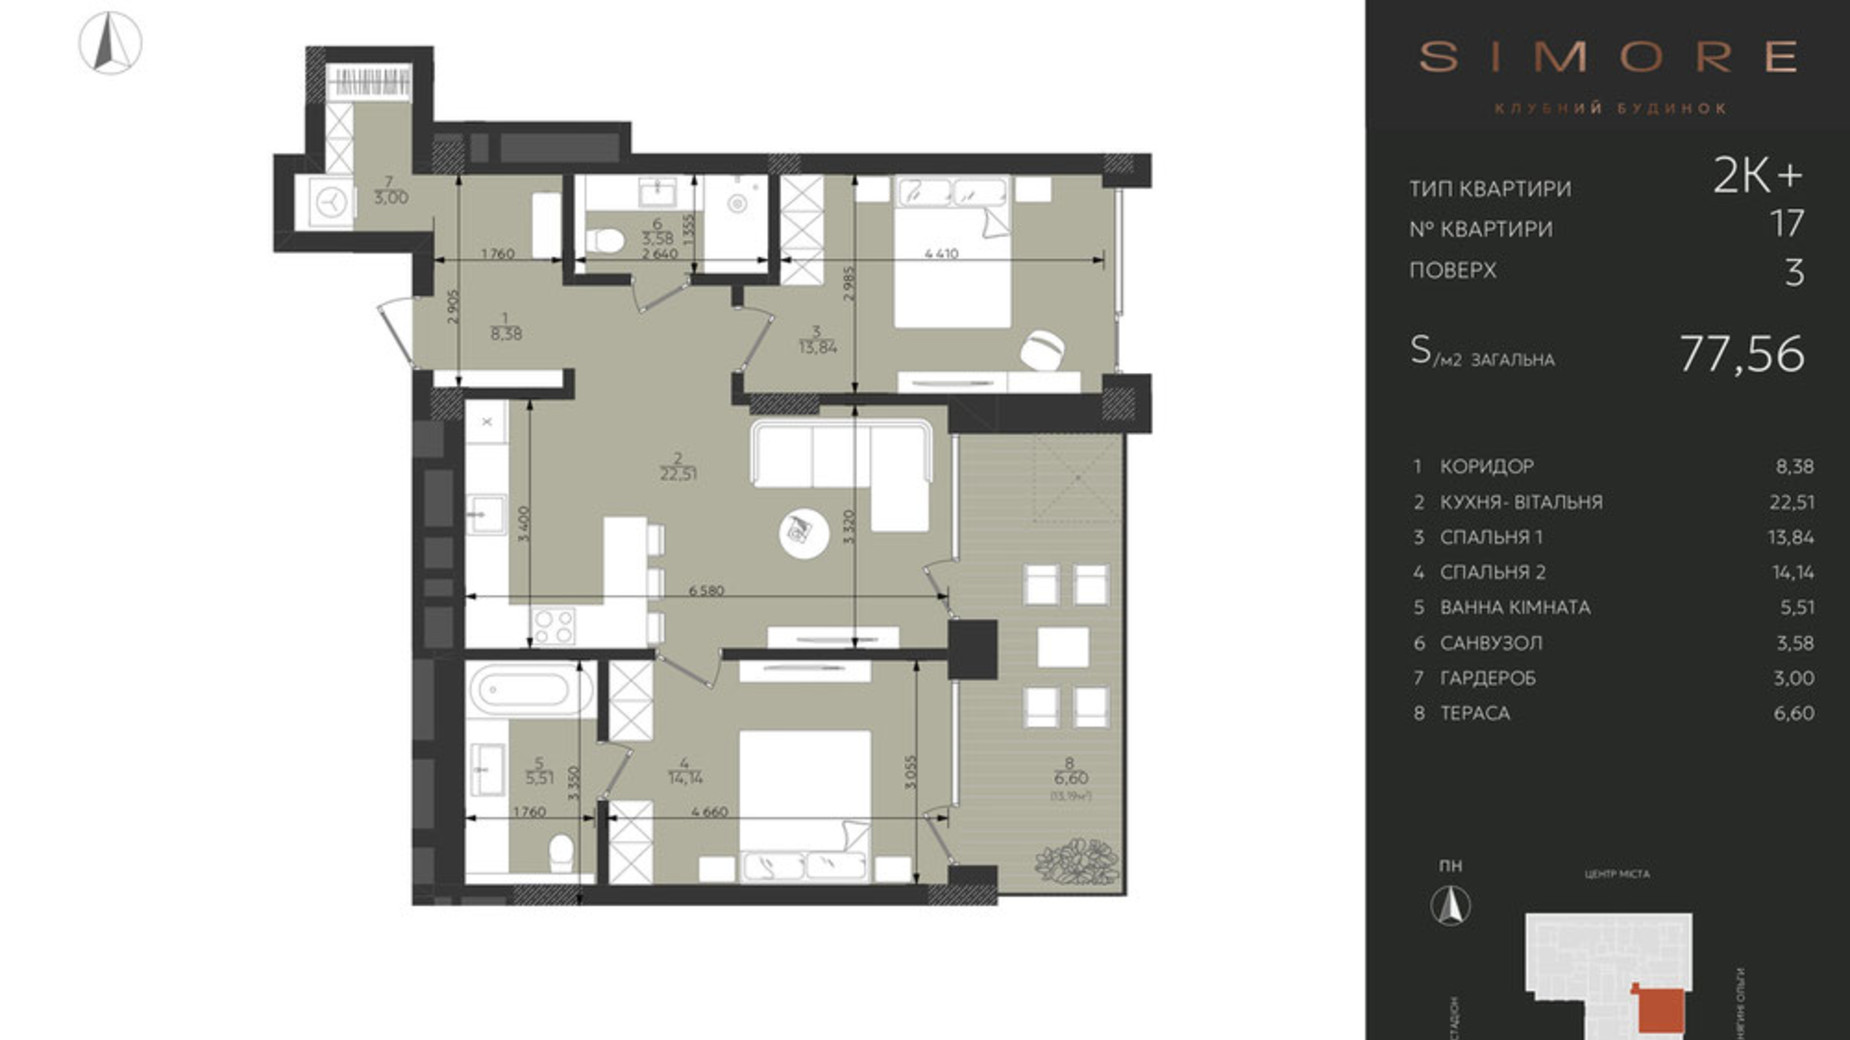 Планировка 2-комнатной квартиры в Клубный дом Simore 77.56 м², фото 694199